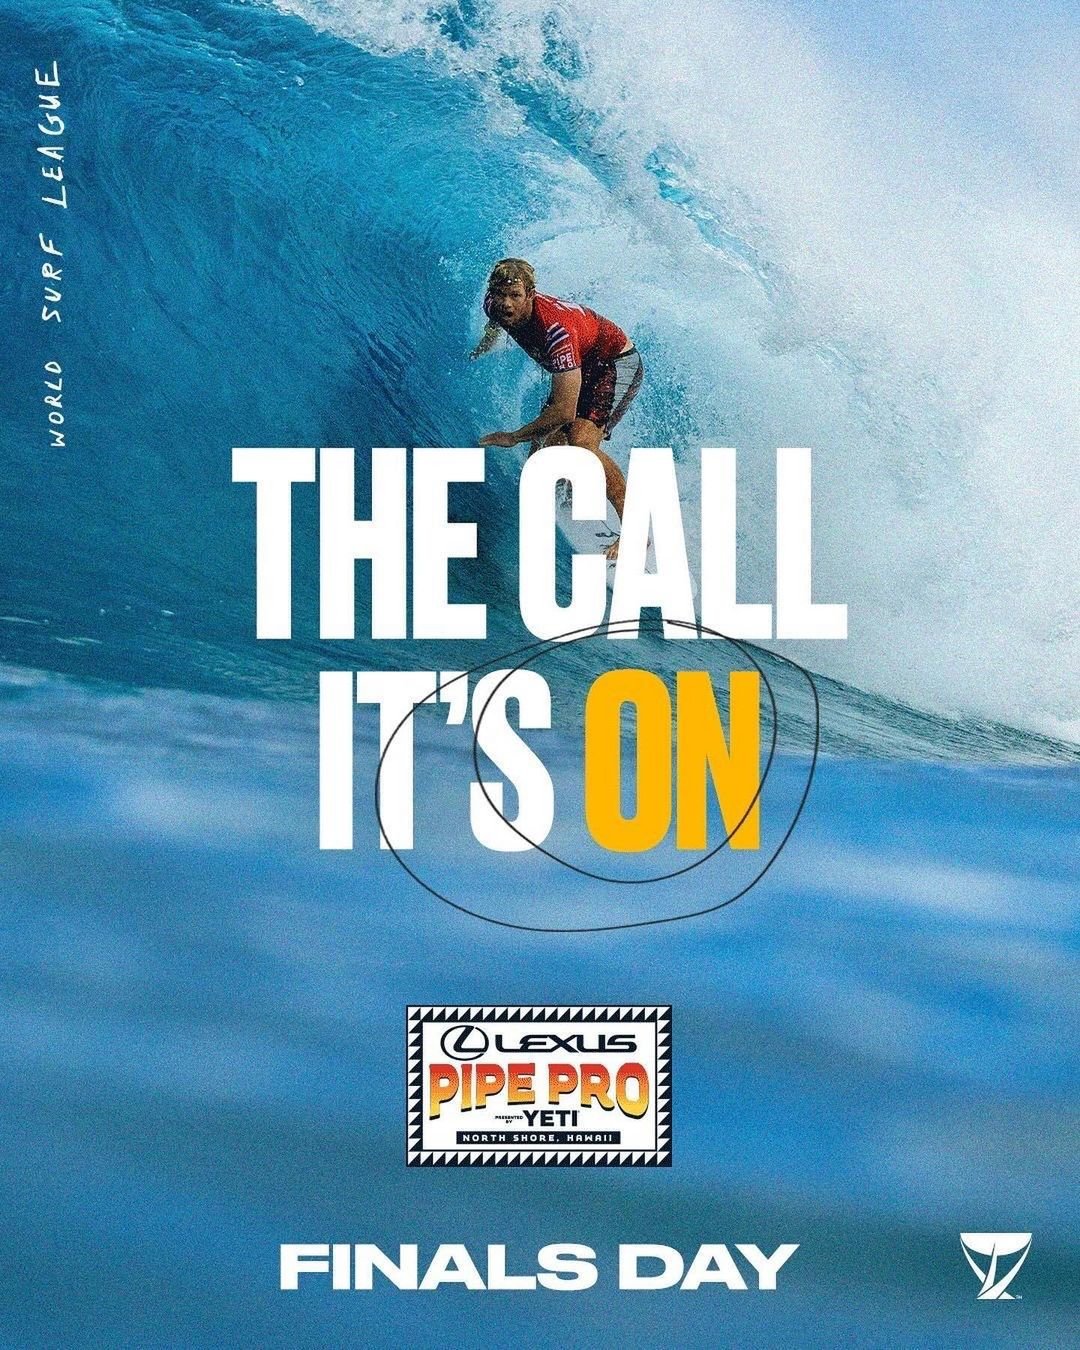 Jason_Penning_World_Surf_League_Brand_Social_GFX_10.jpg